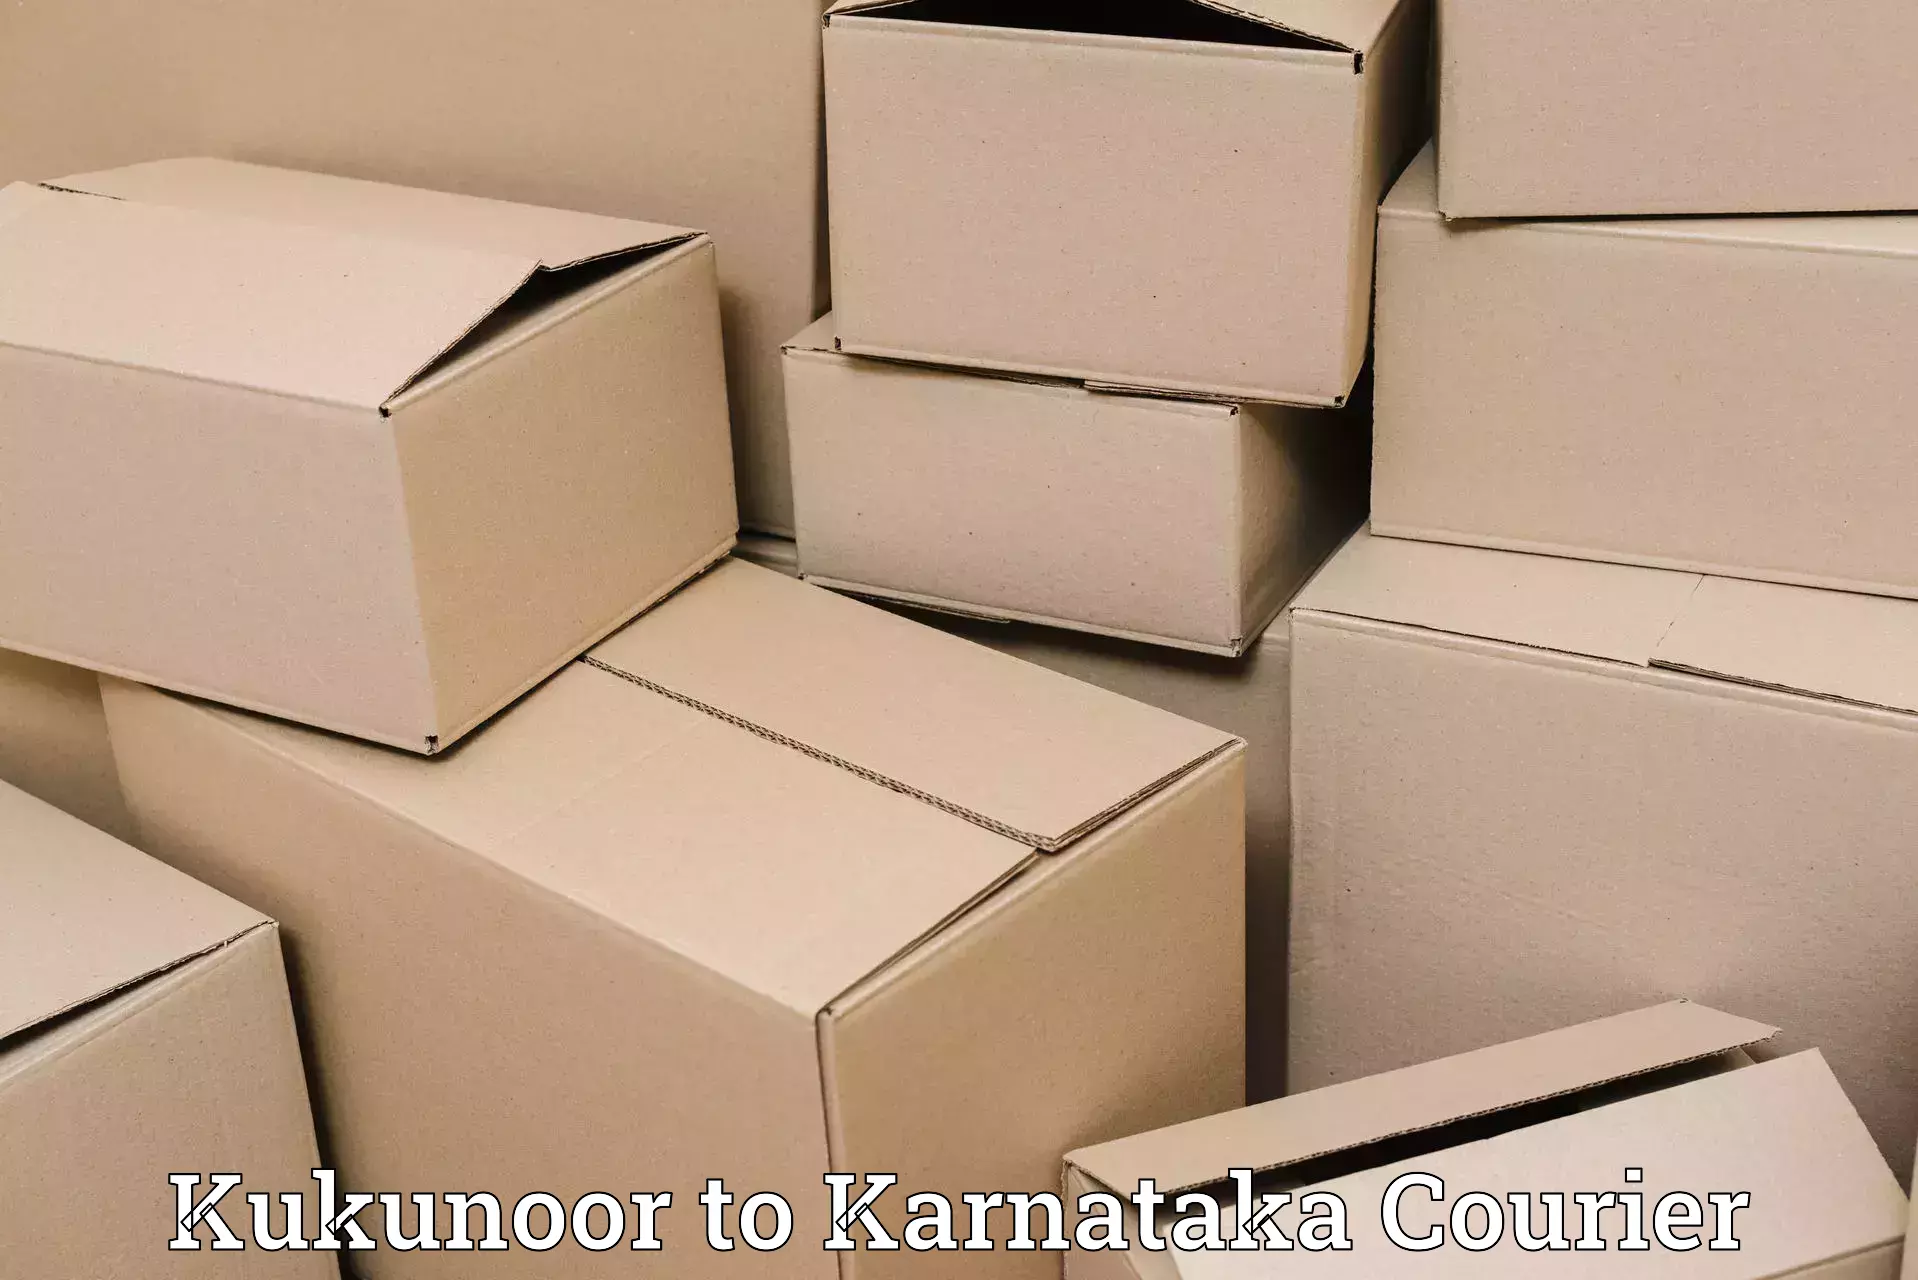 Return courier service Kukunoor to Bangarapet